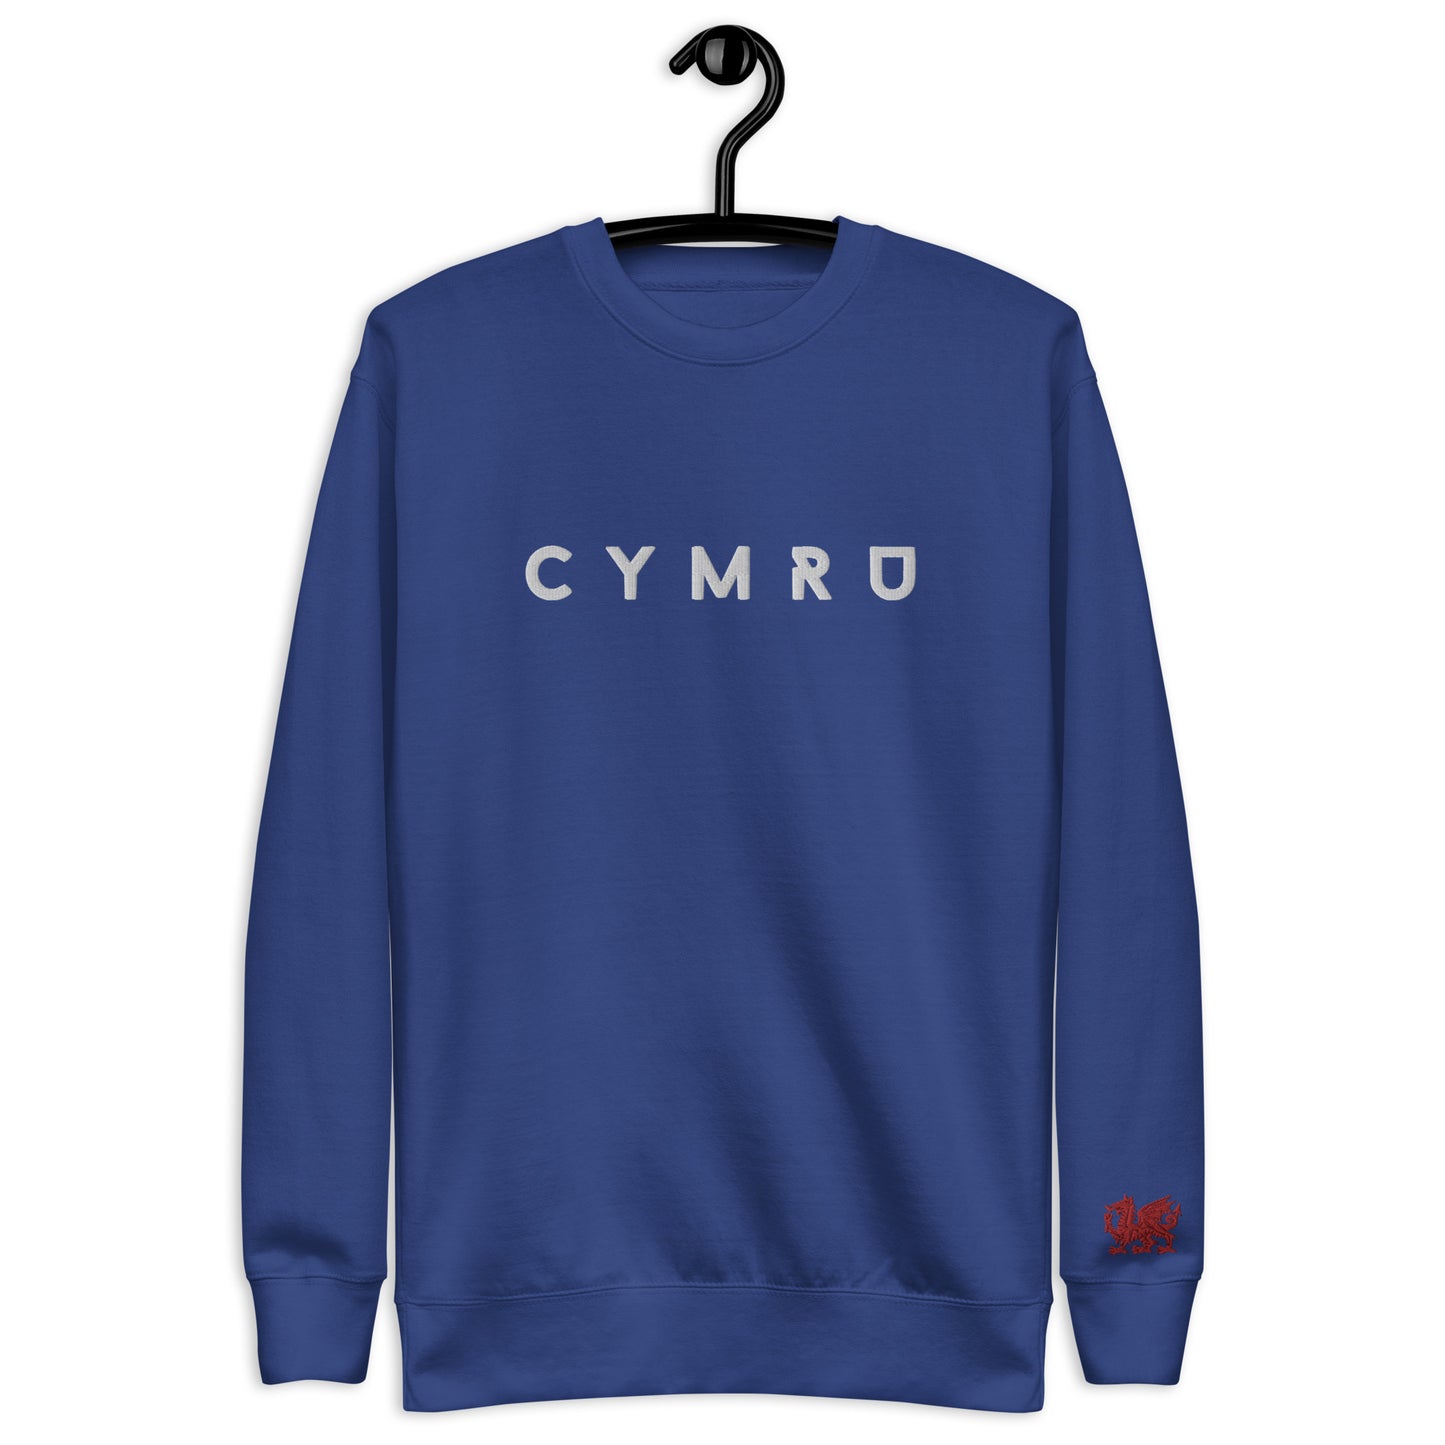 Cymru - Unisex Premium Sweatshirt